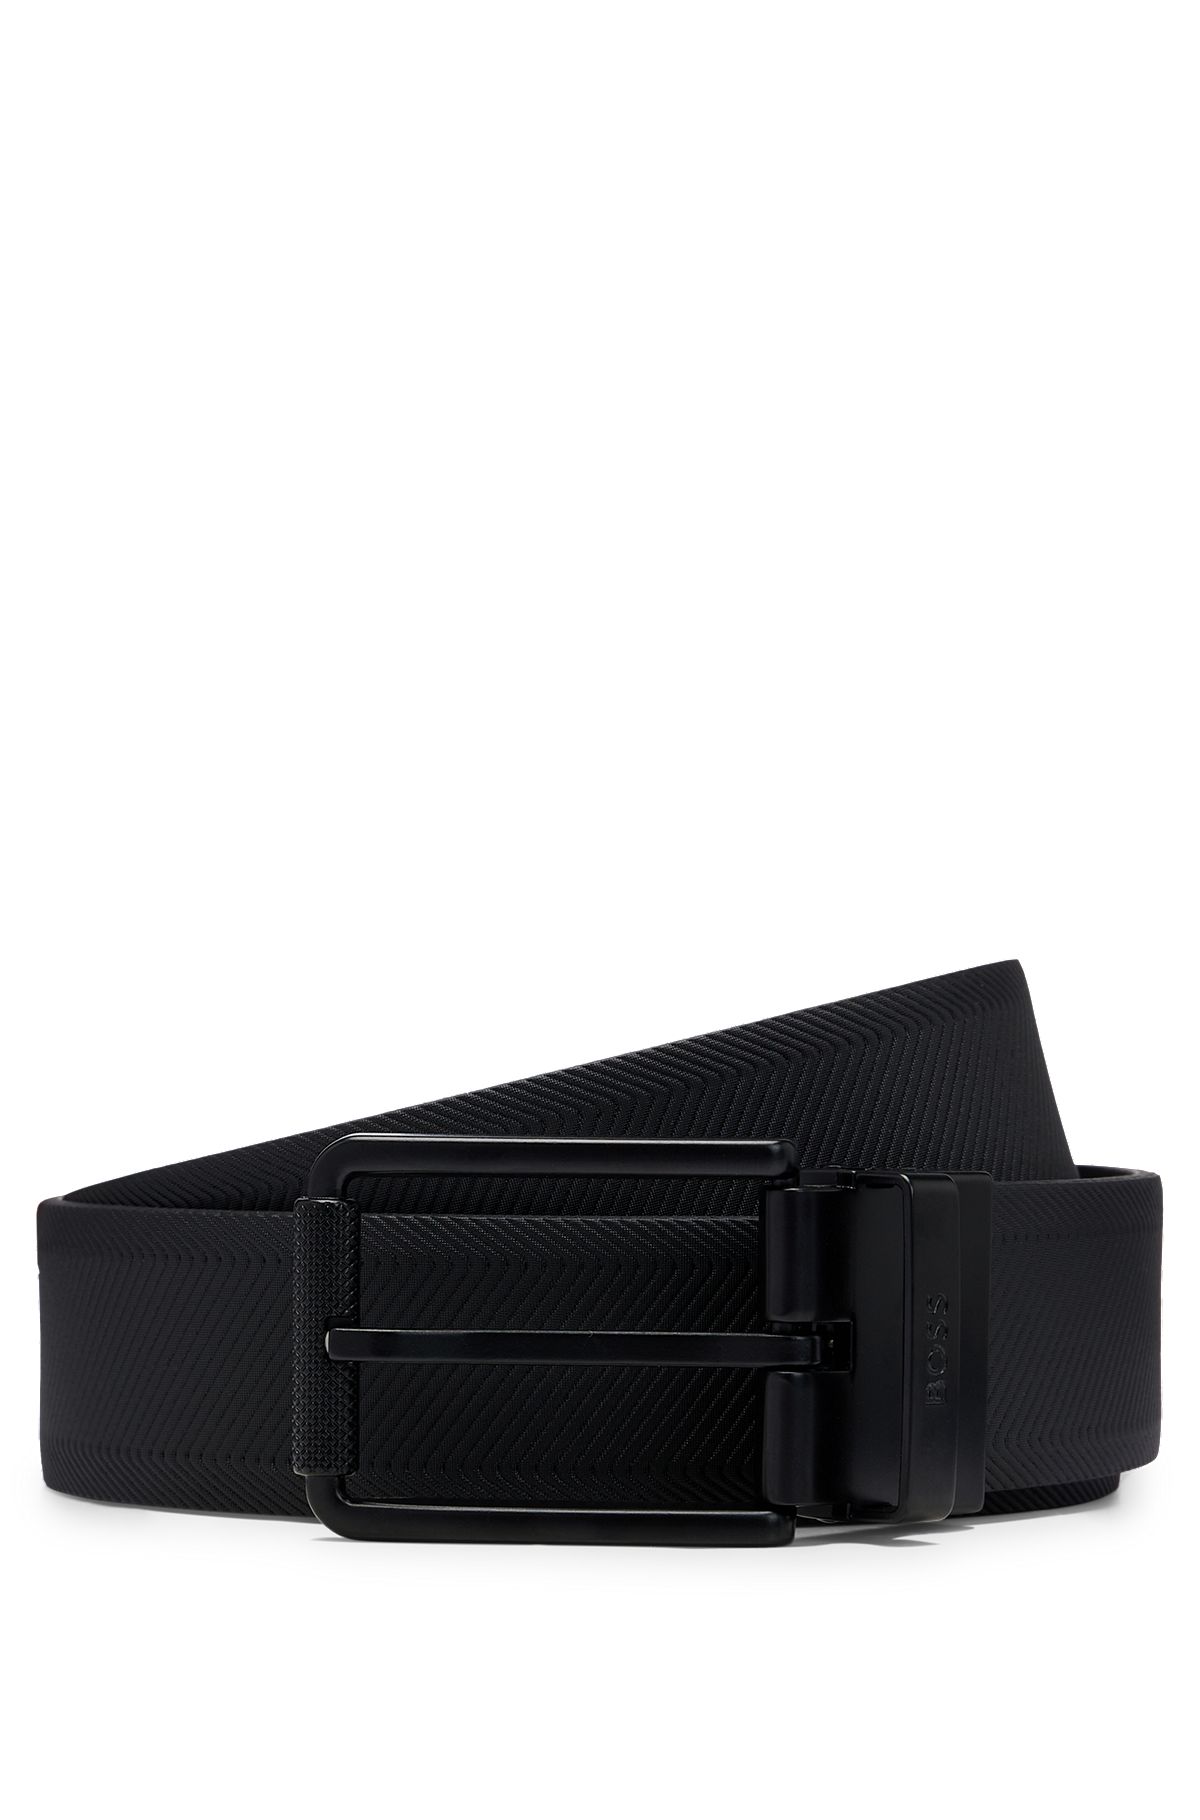 Cinturón reversible de piel con hebilla corredera negra barnizada, Negro